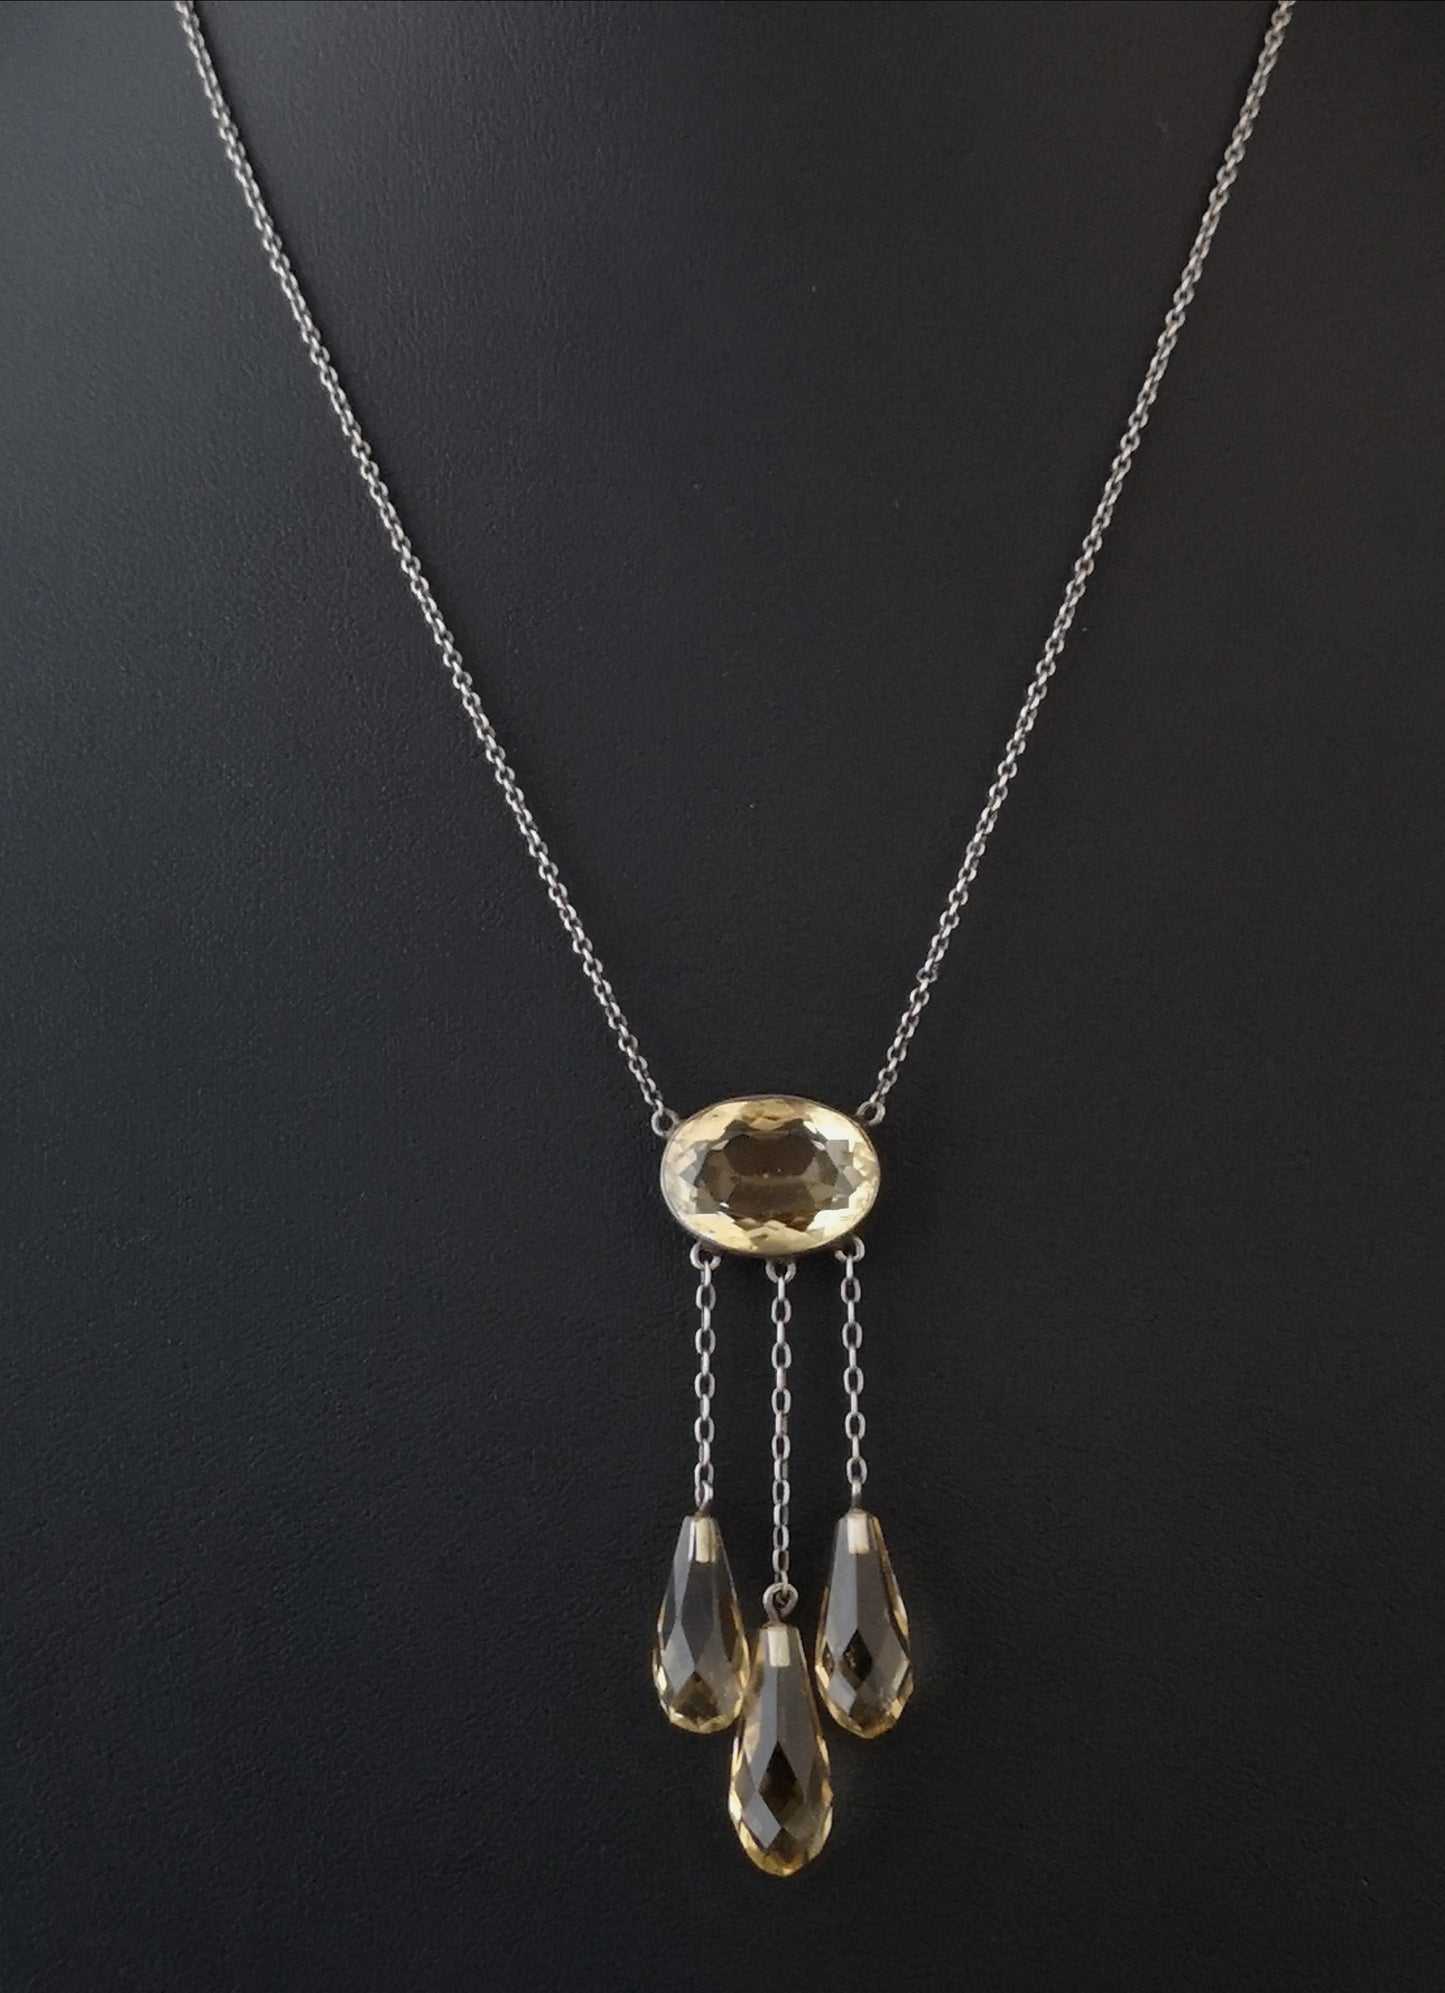 Antique Citrine drop necklace, Art Nouveau